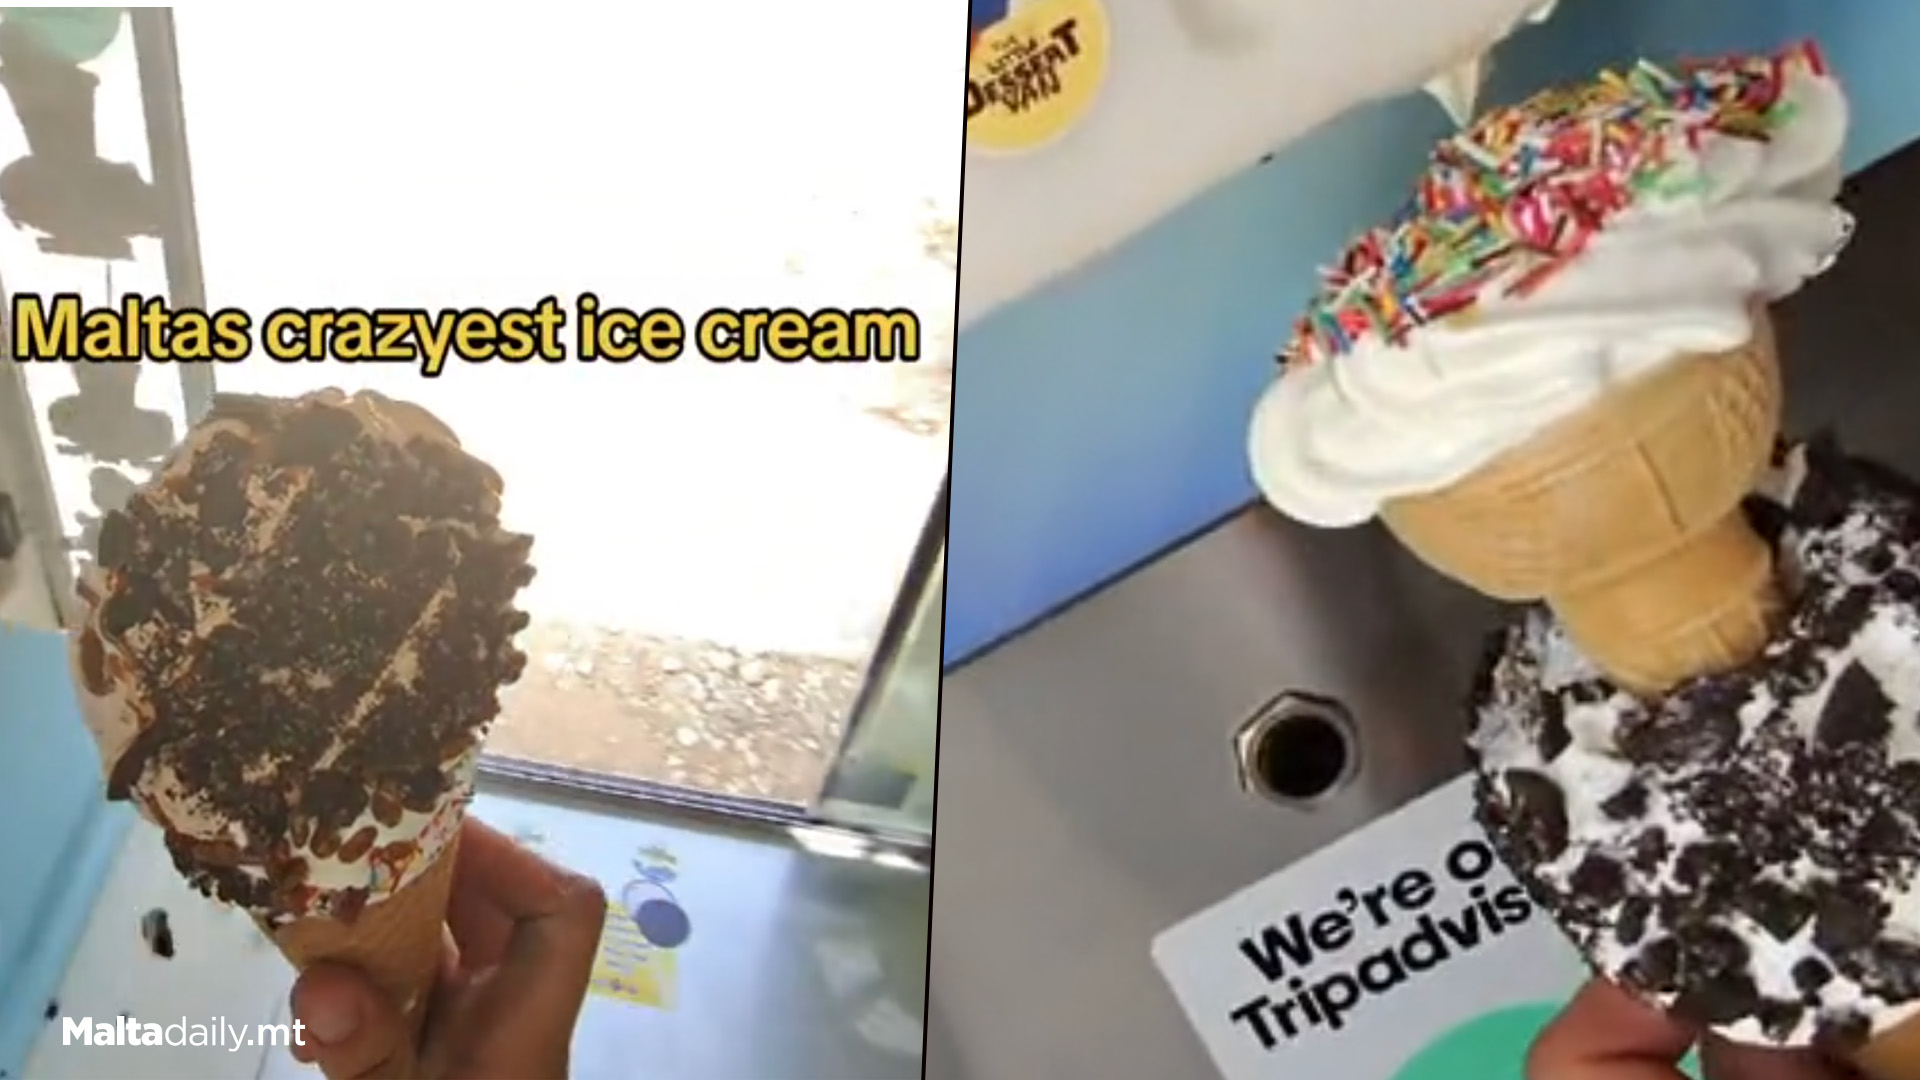 Is This Malta’s Craziest Ice Cream?